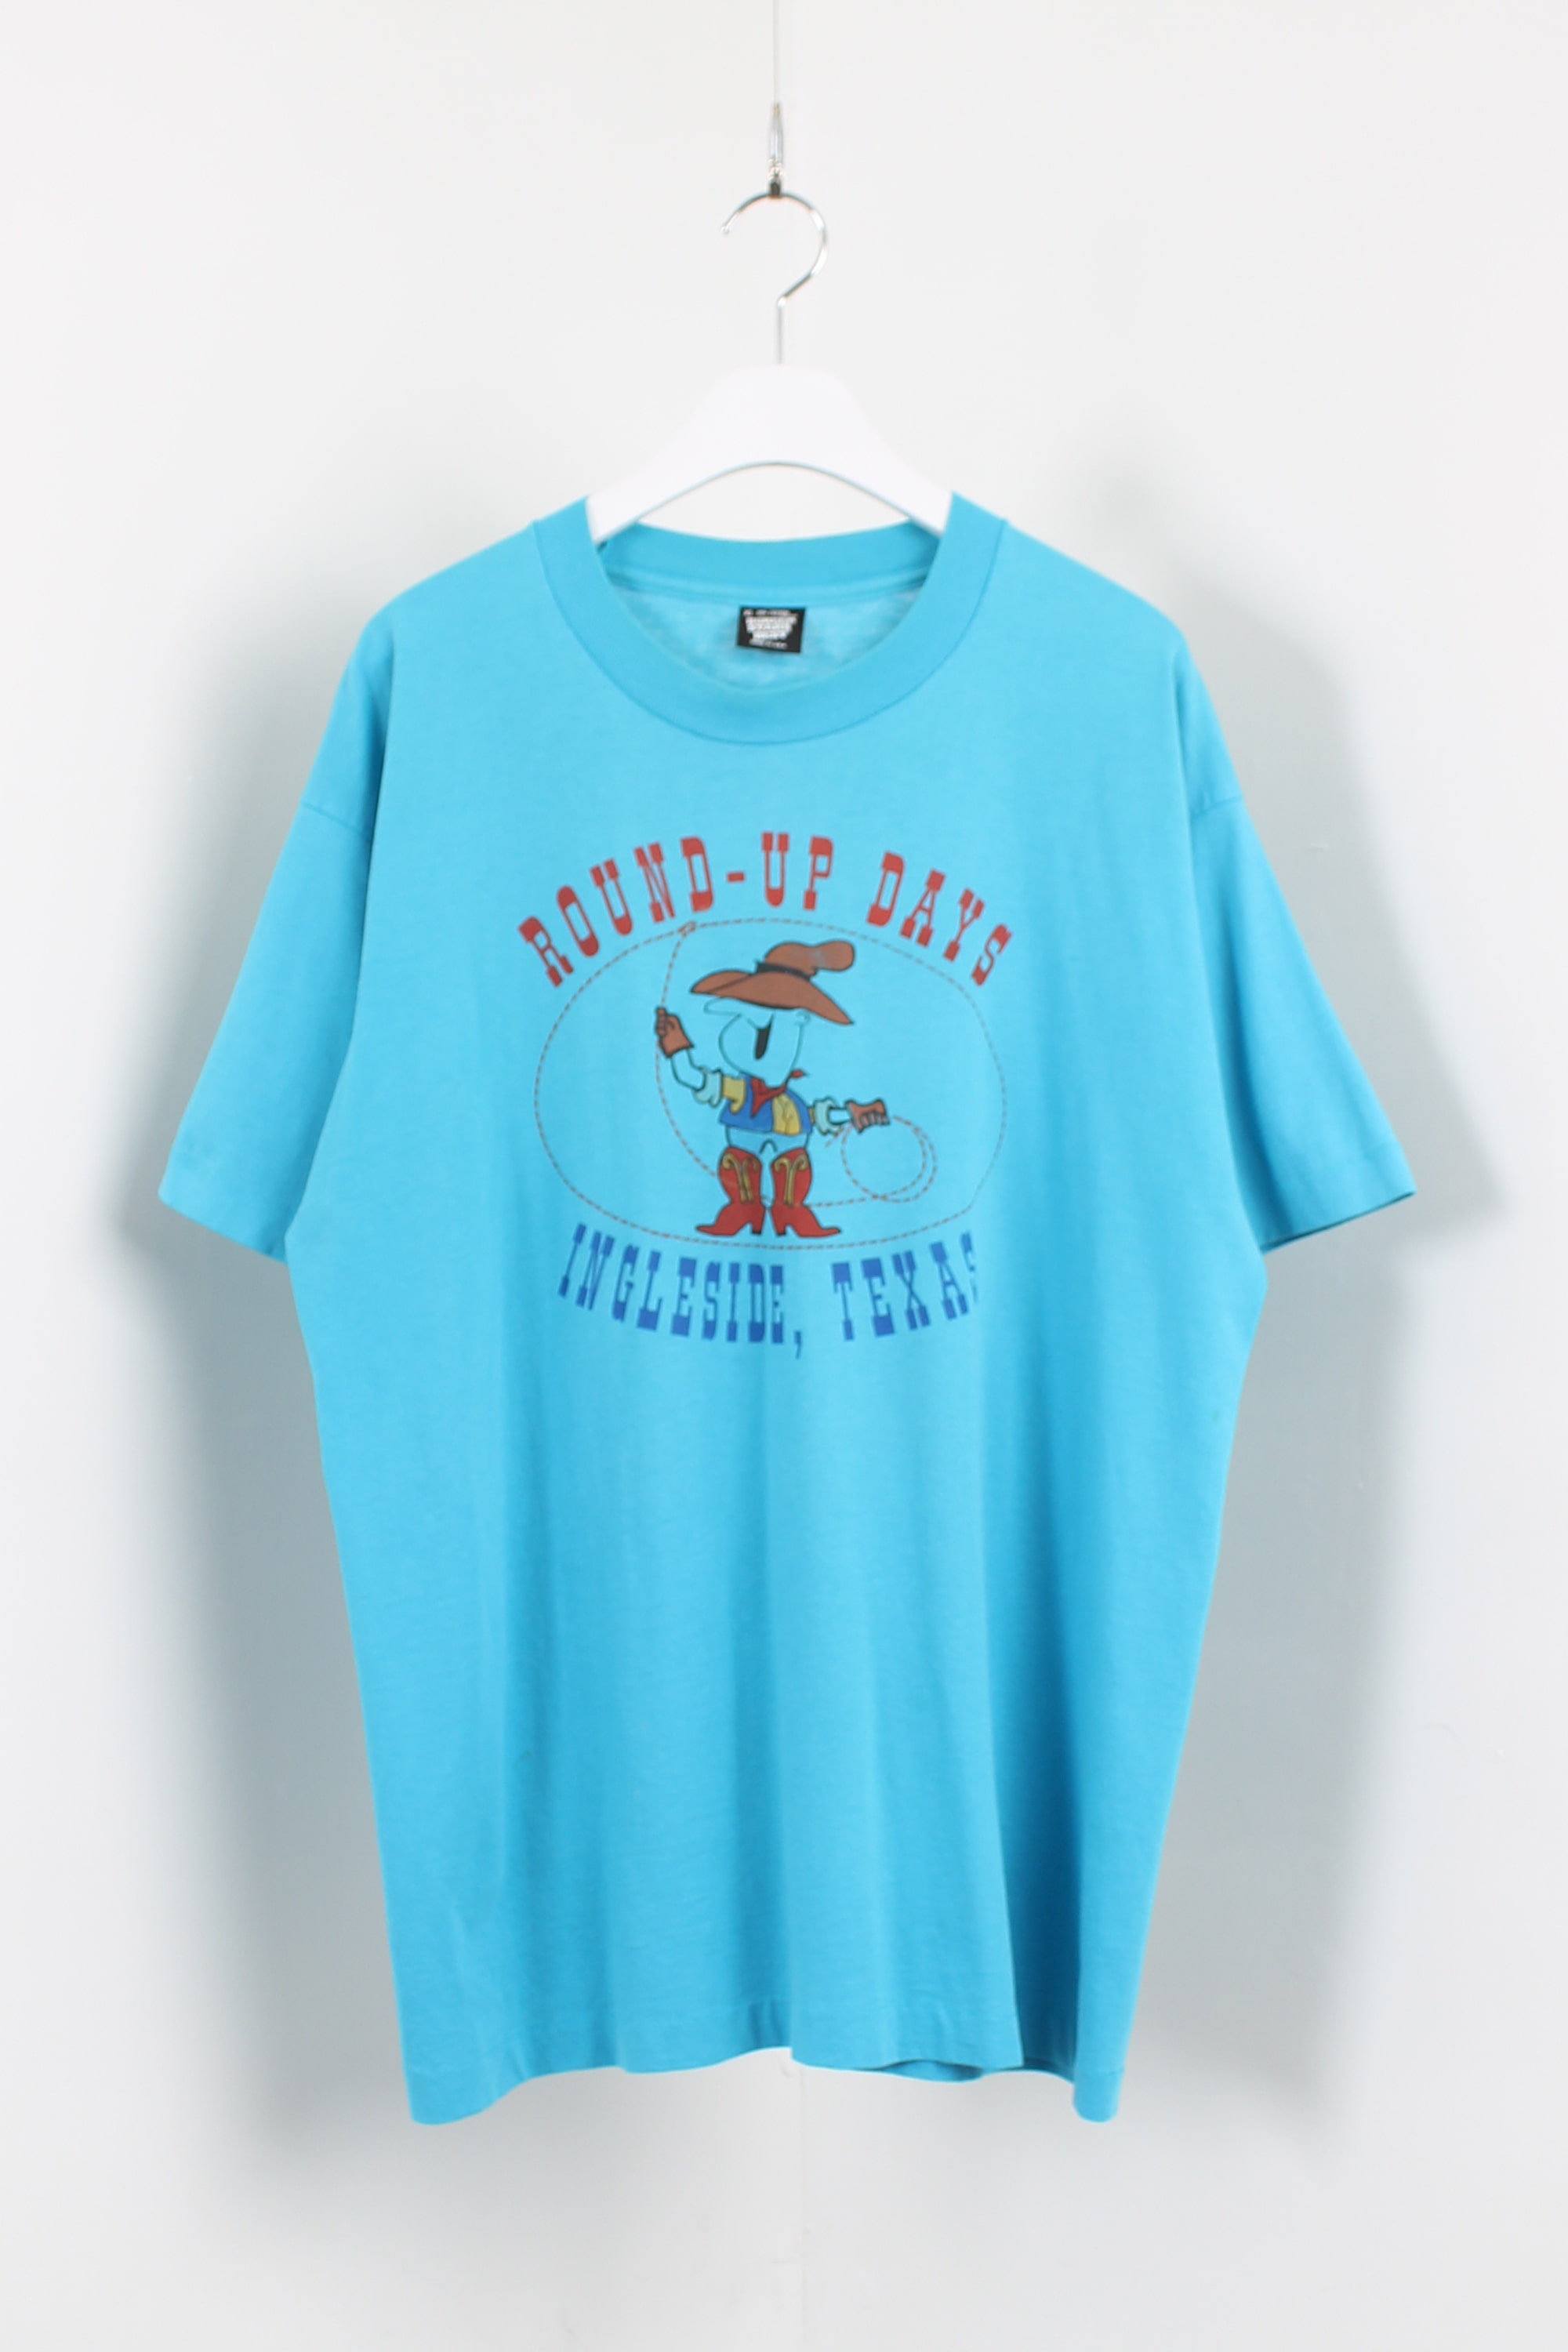 SCREEN STARS BEST 50/50 t-shirt